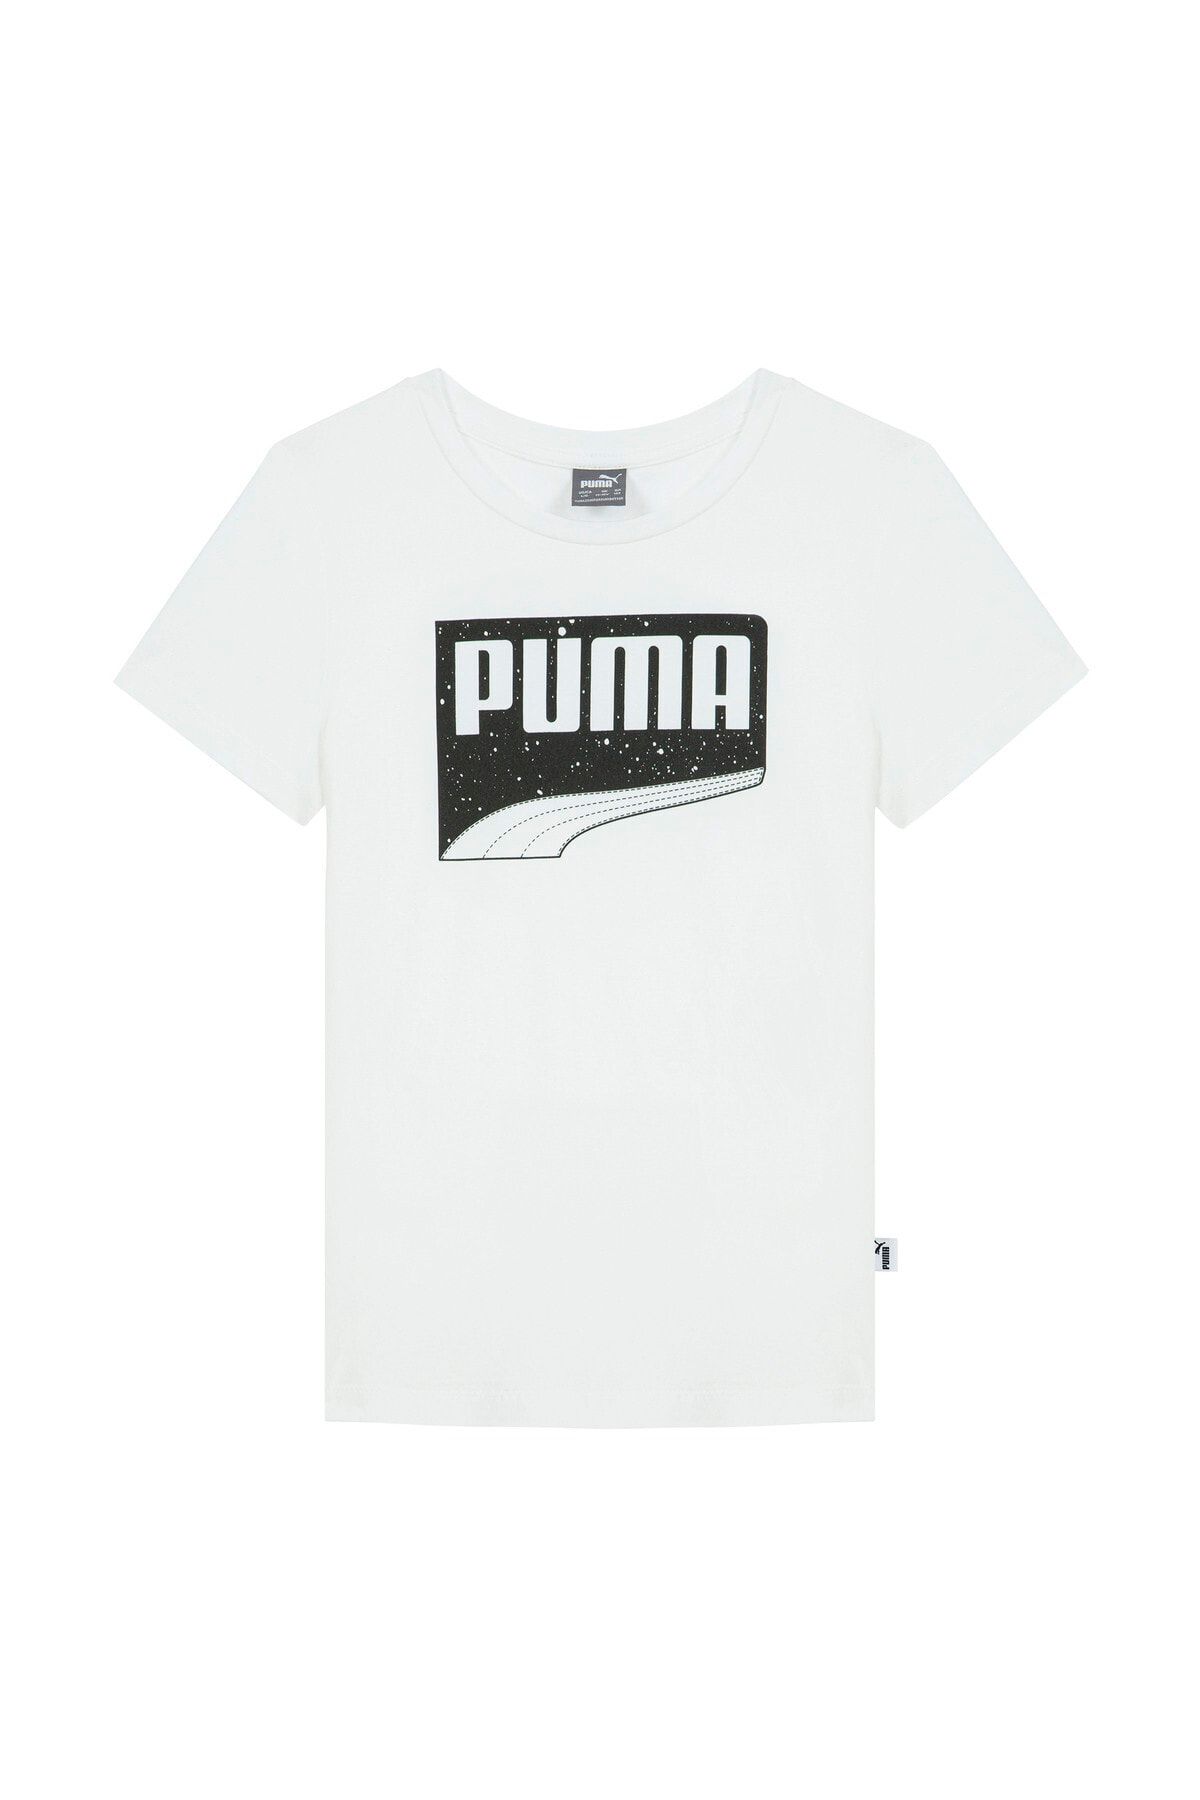 Puma Erkek Çocuk Beyaz Tişört Bppo-002708